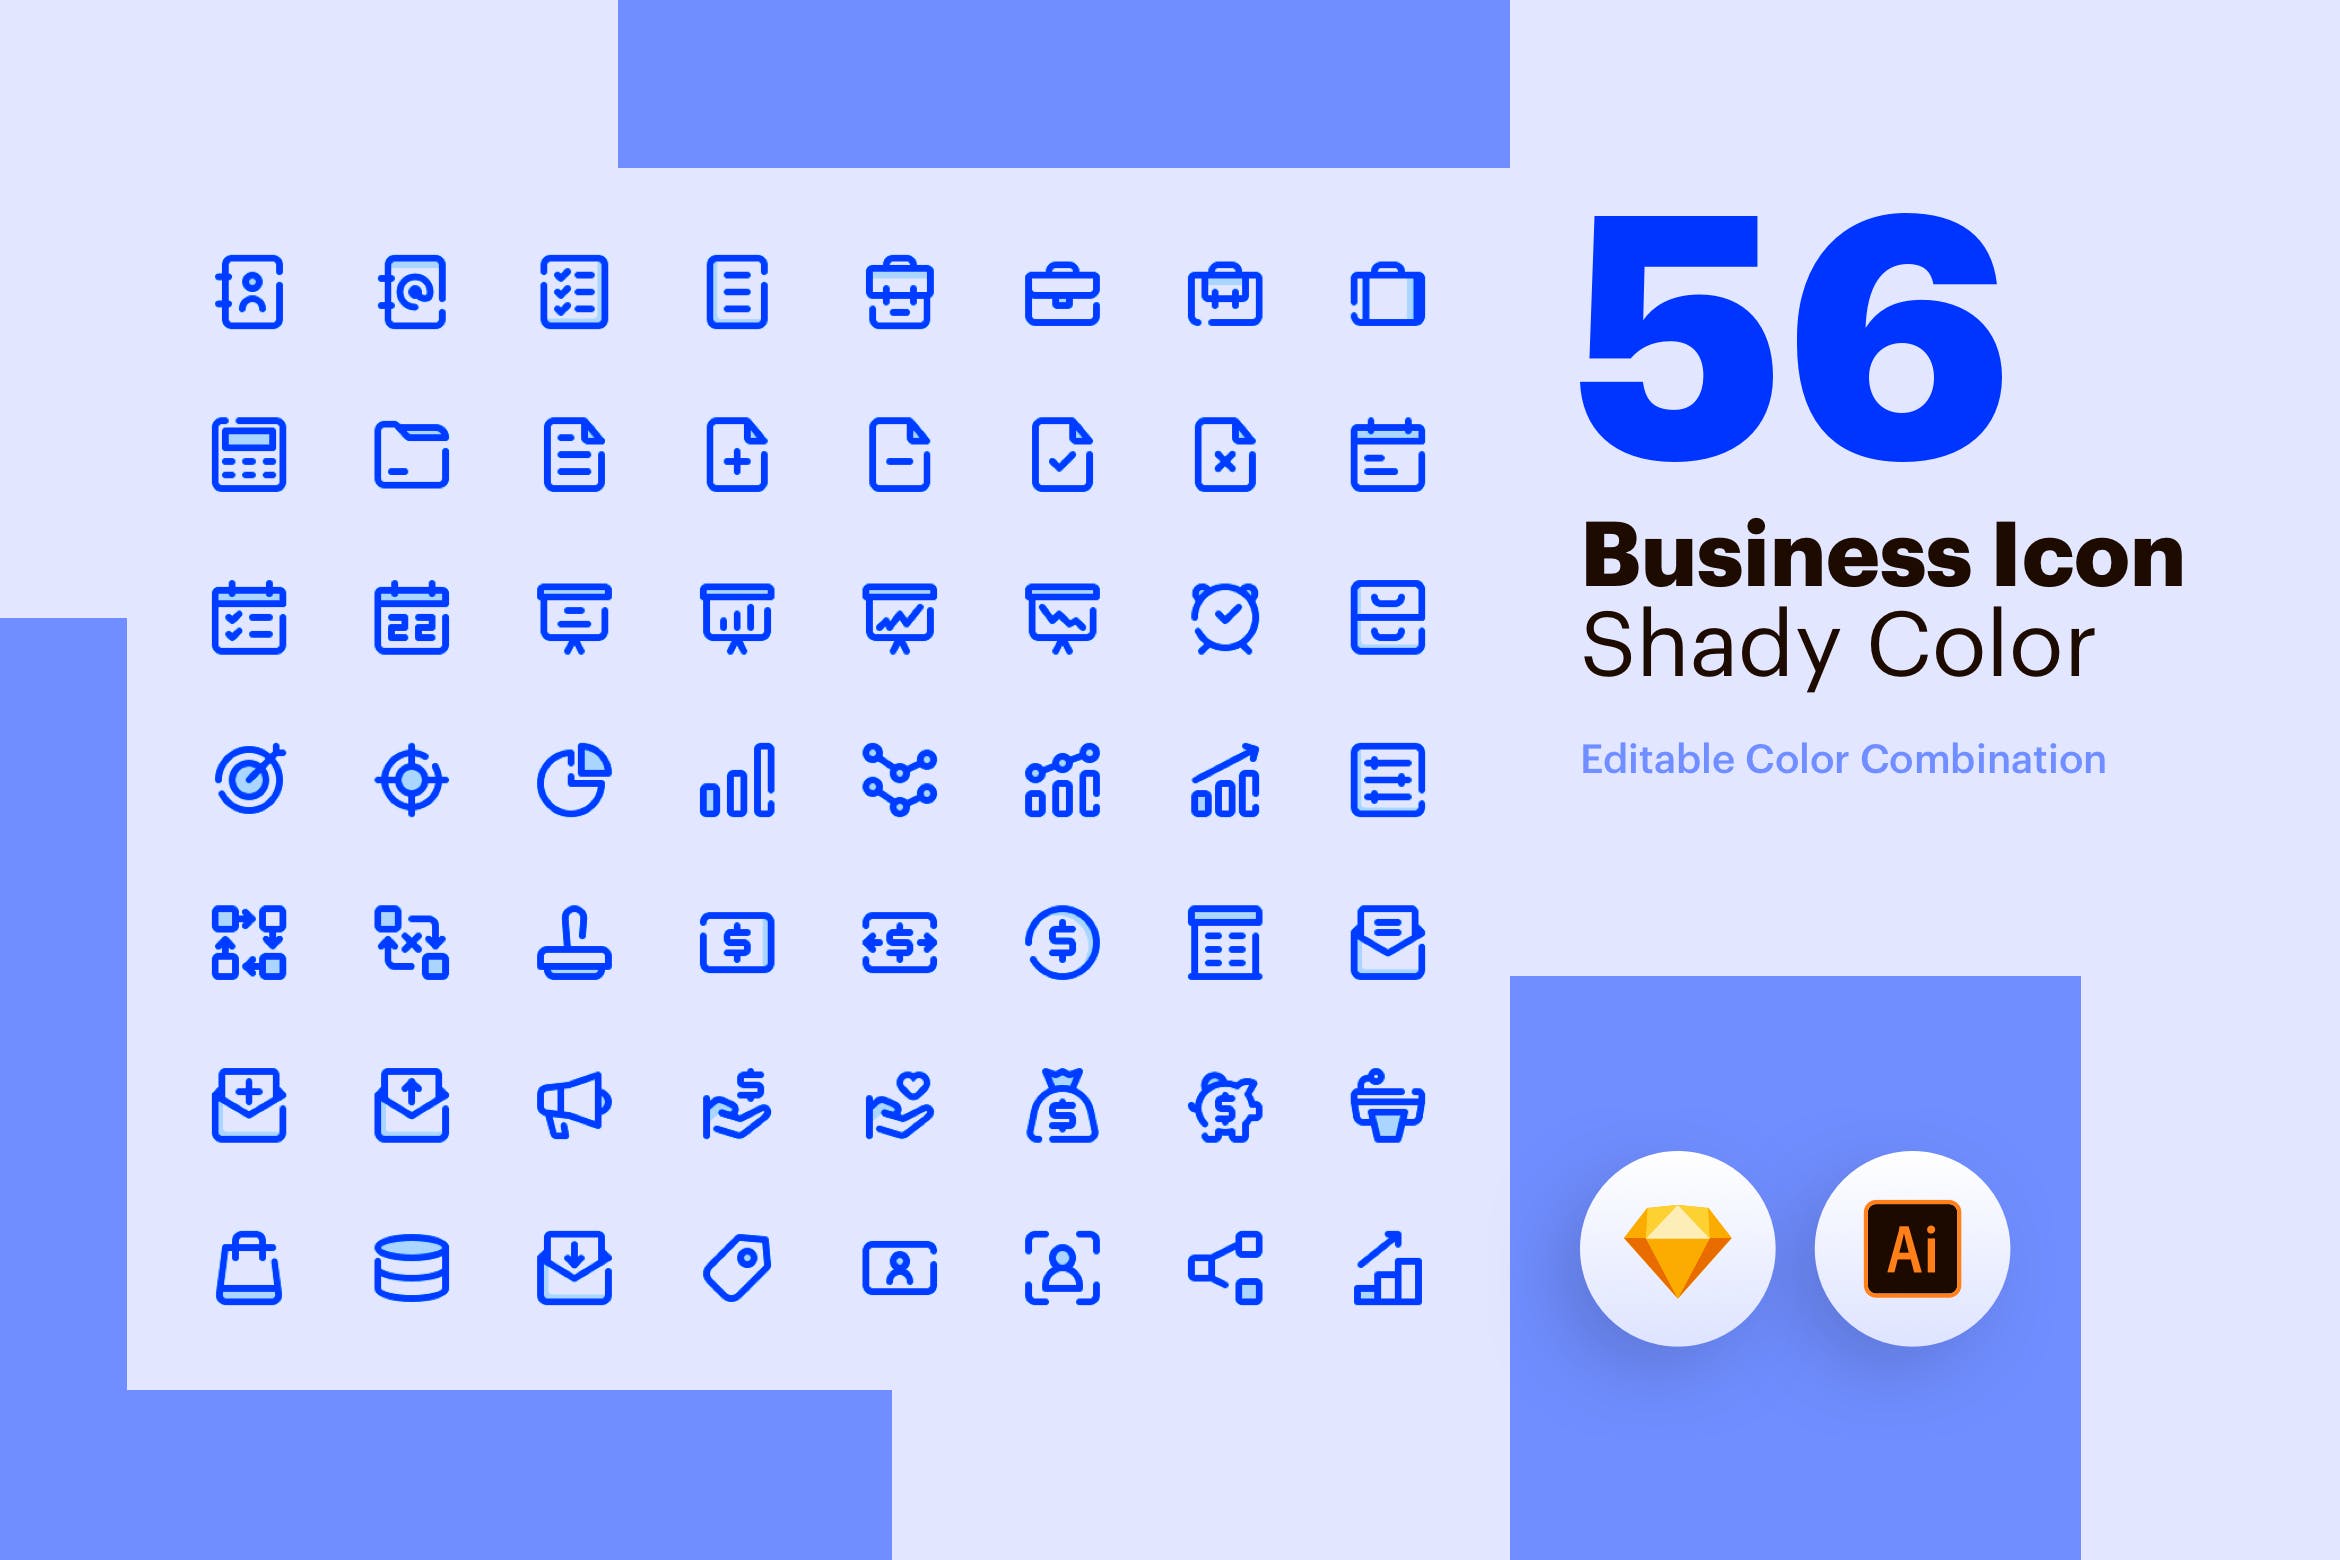 56枚商业主题彩色阴影矢量第一素材精选图标素材包 Business Icon – Shady Color插图